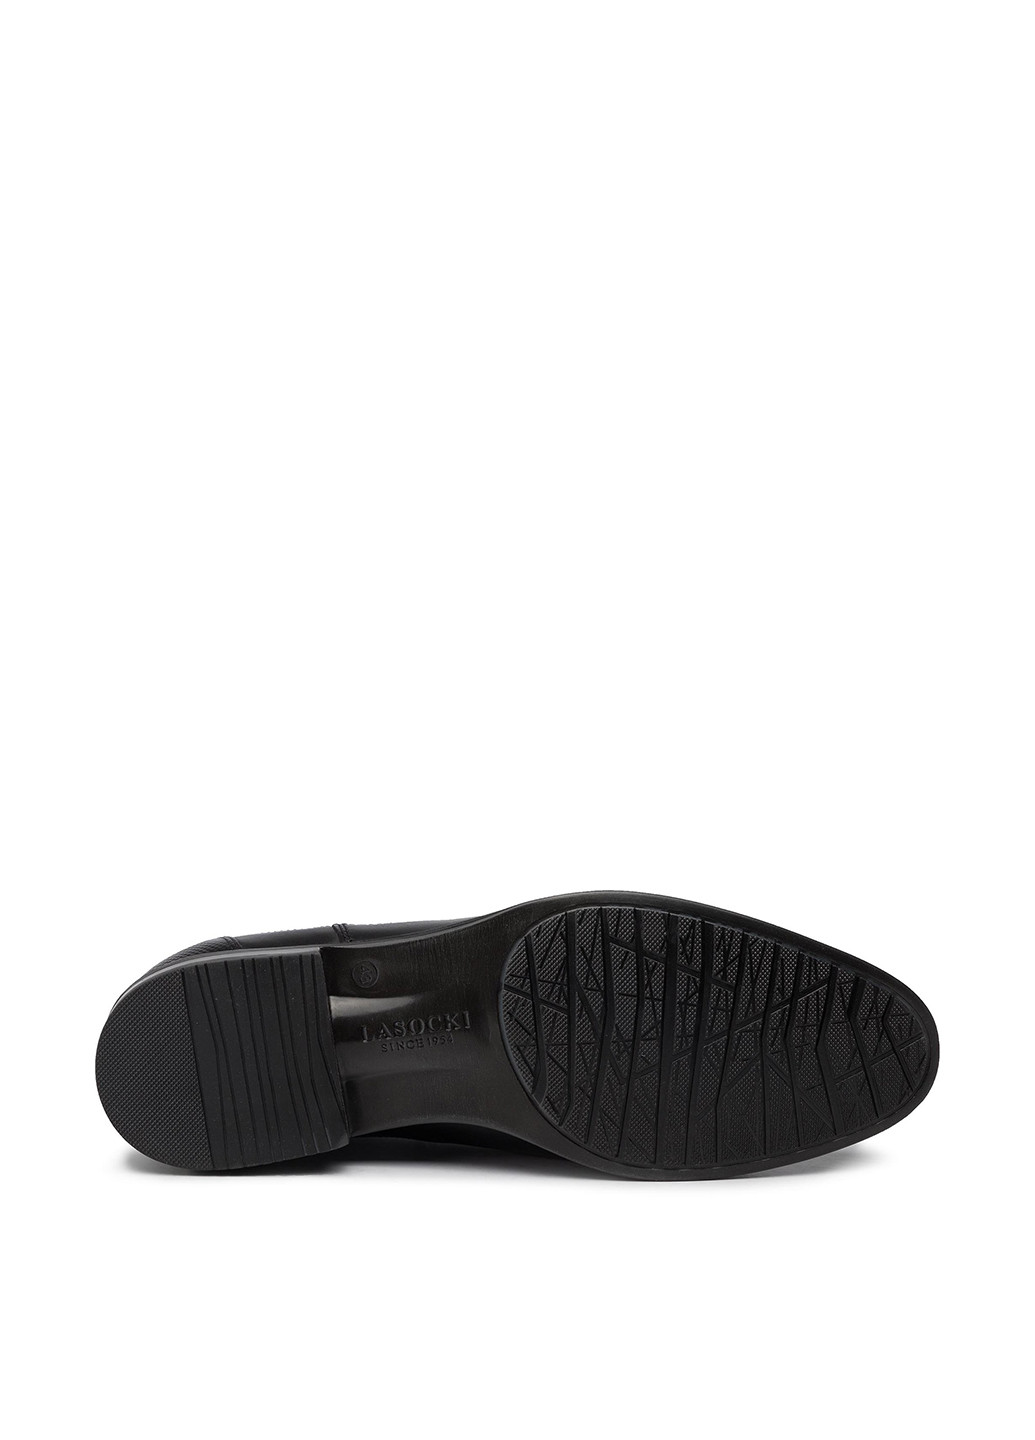 Черные осенние черевики lasocki for men mb-dylan-01 челси Lasocki for men